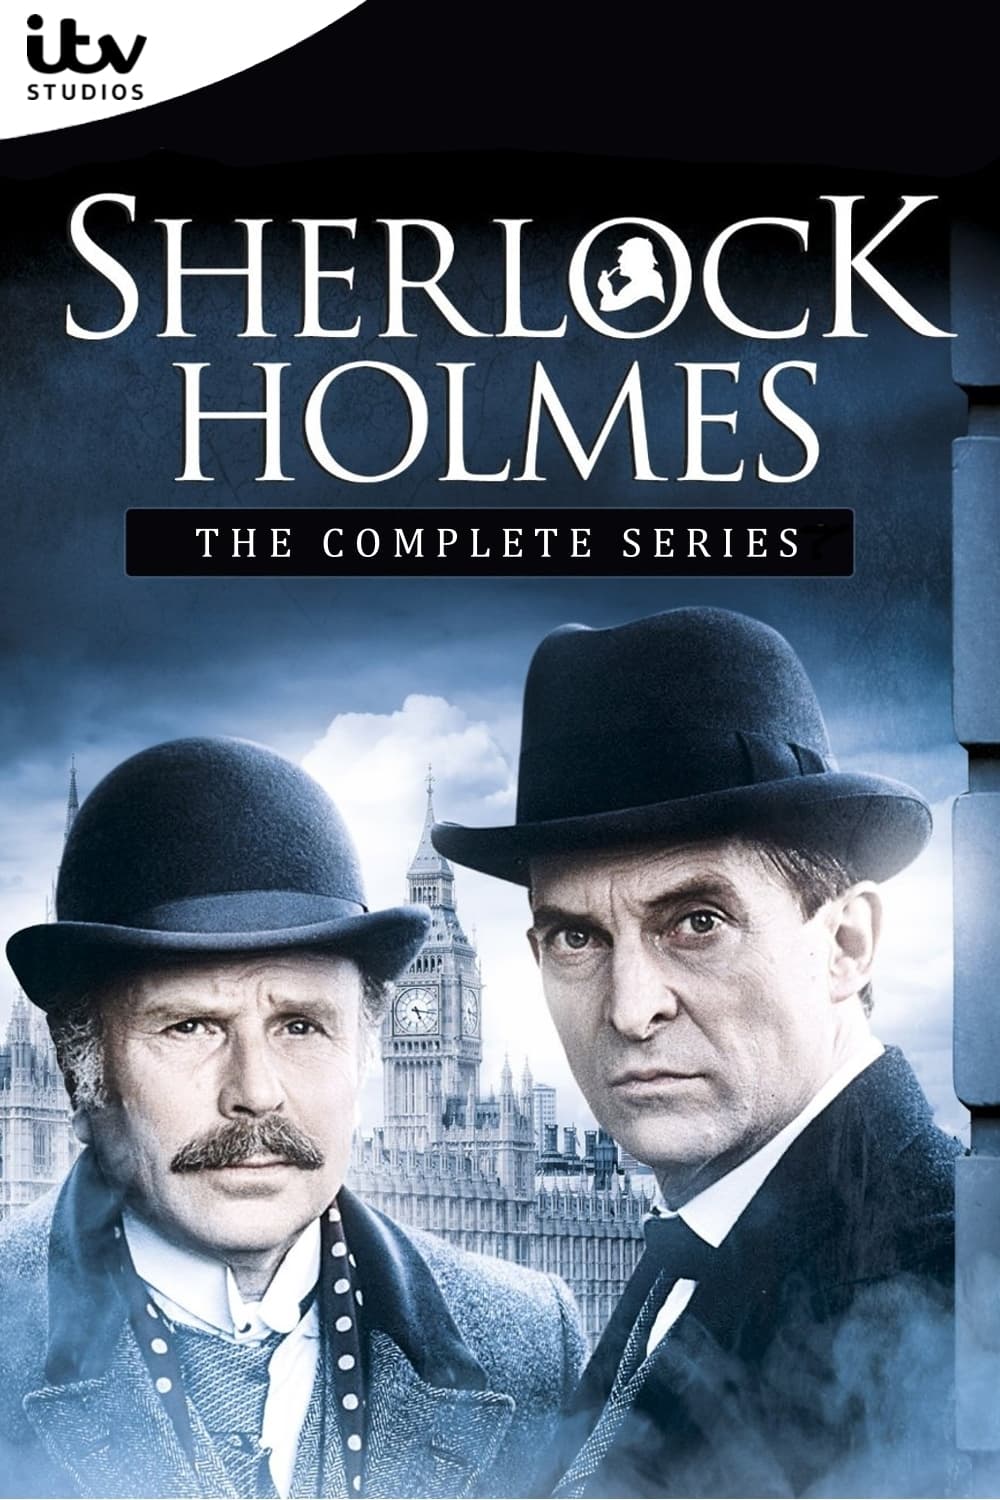 Las aventuras de Sherlock Holmes (1984)